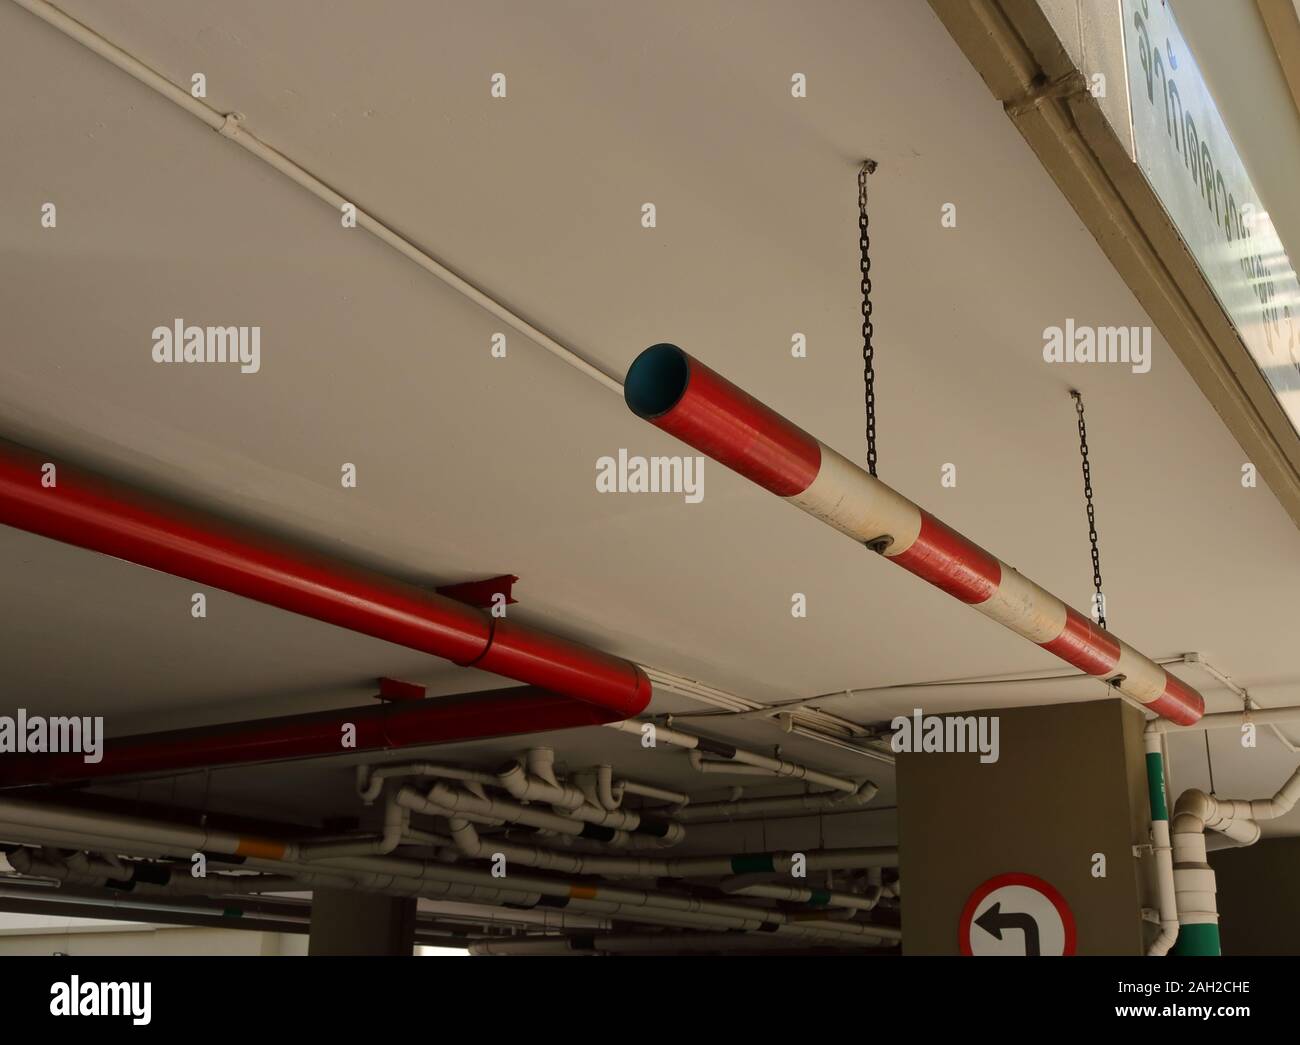 Limitation de hauteur de voiture Gros plan signe fait à partir de tuyaux de PVC peintes en rouge et blanc, suspendu au plafond par des chaînes à l'entrée du stationnement Banque D'Images